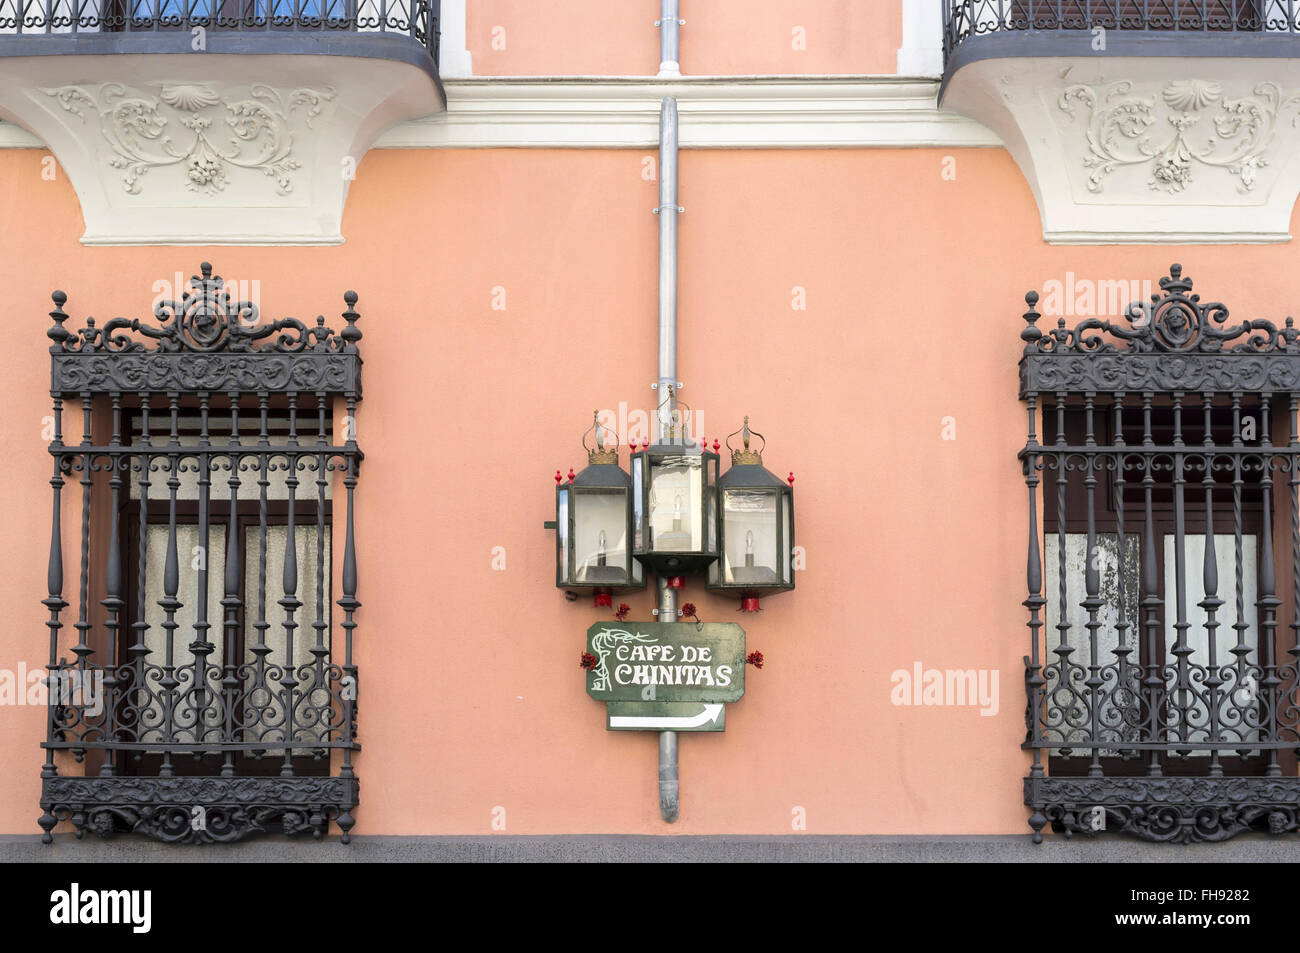 Madrid. Facade Cafe de Chinitas. Stock Photo